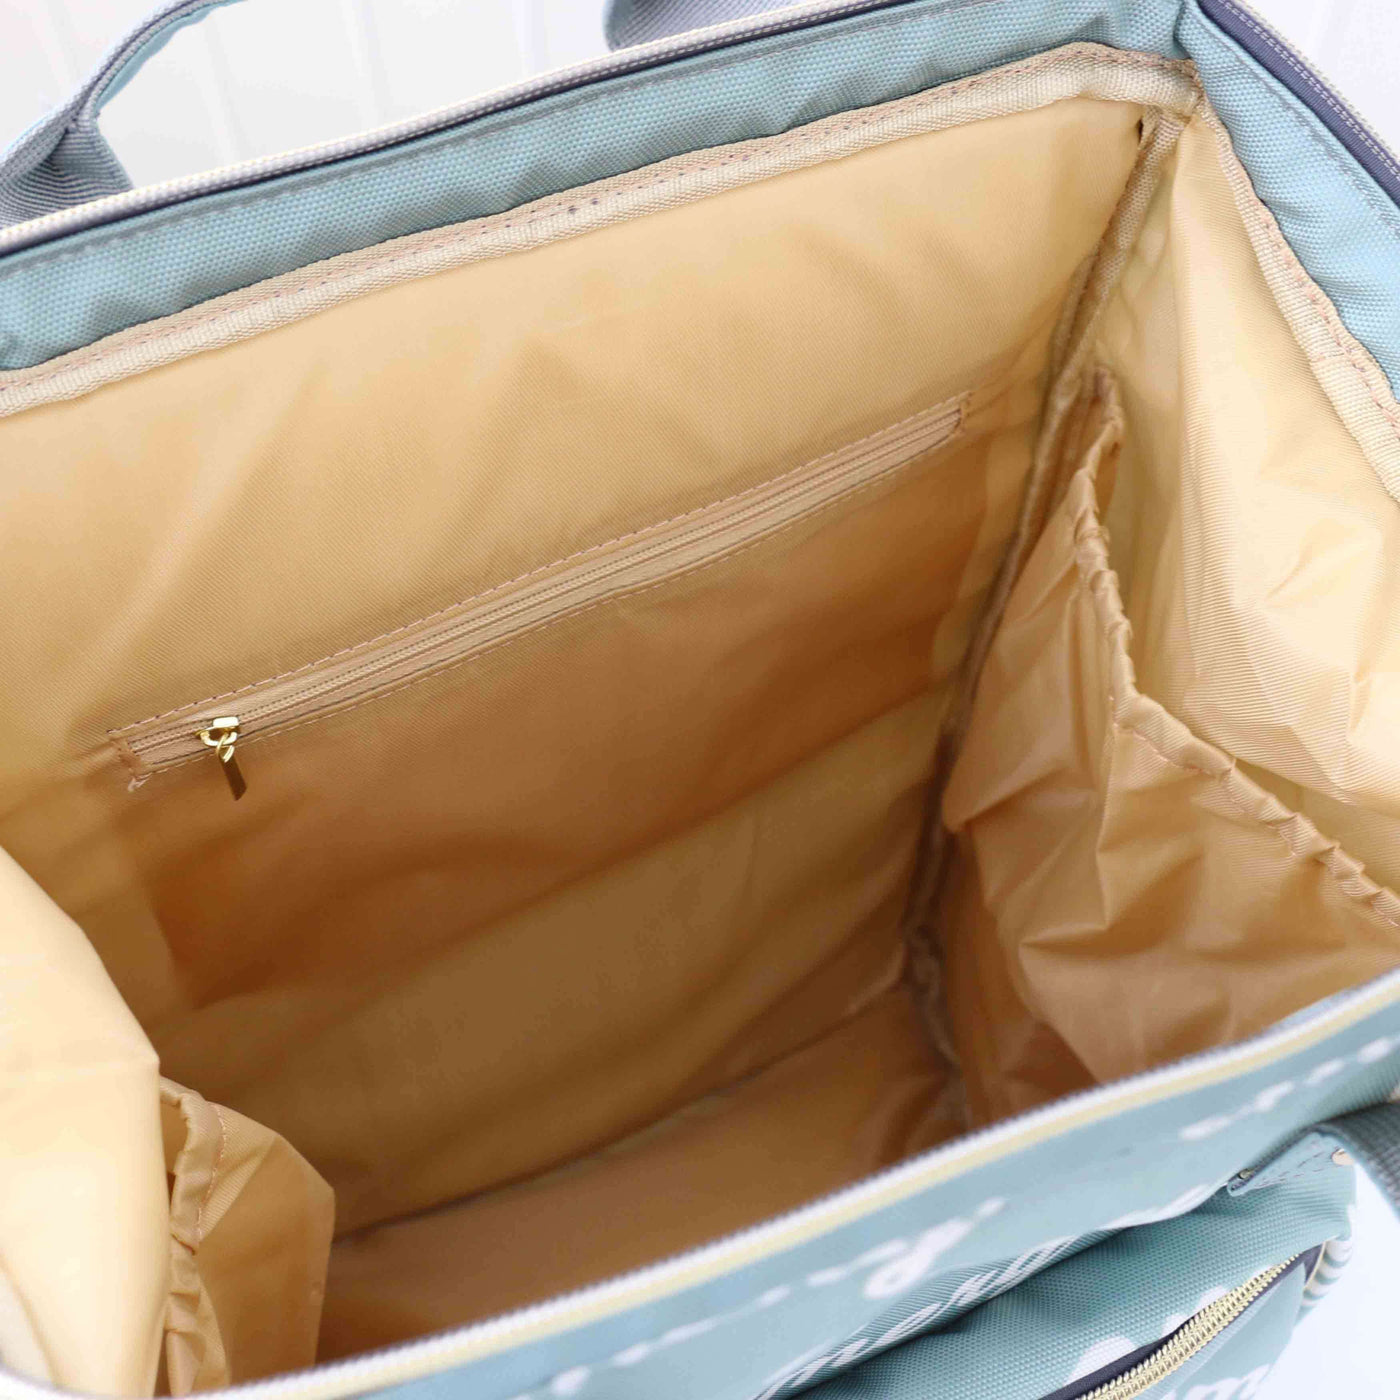 diaper bag backpack interior